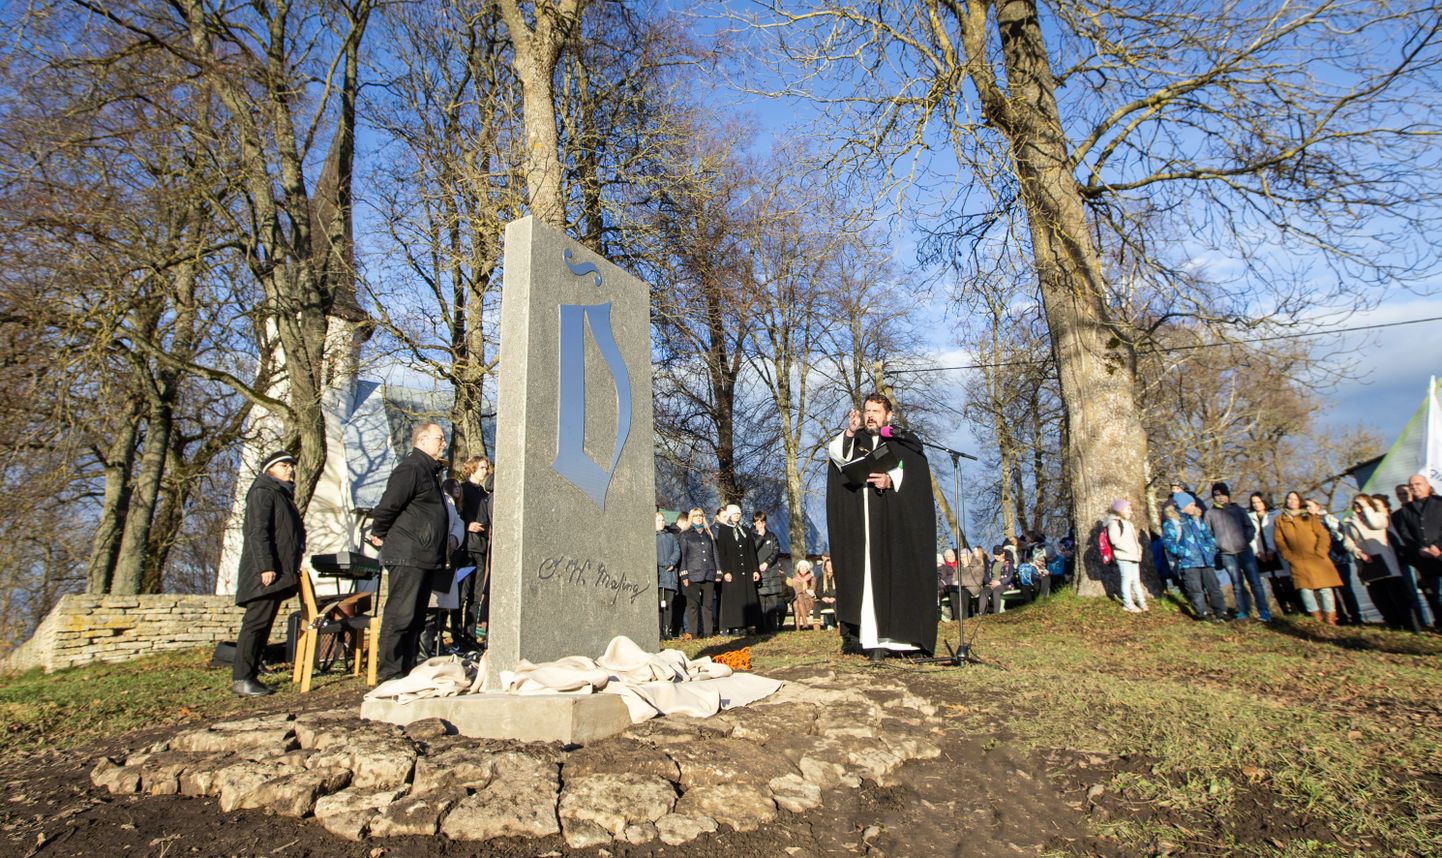 "See mälestusmärk ei ole ainult kivi ja metall, vaid meie tänulikkuse ja austuse sümbol," ütles Ulvar Kullerkupp ausammast avades.